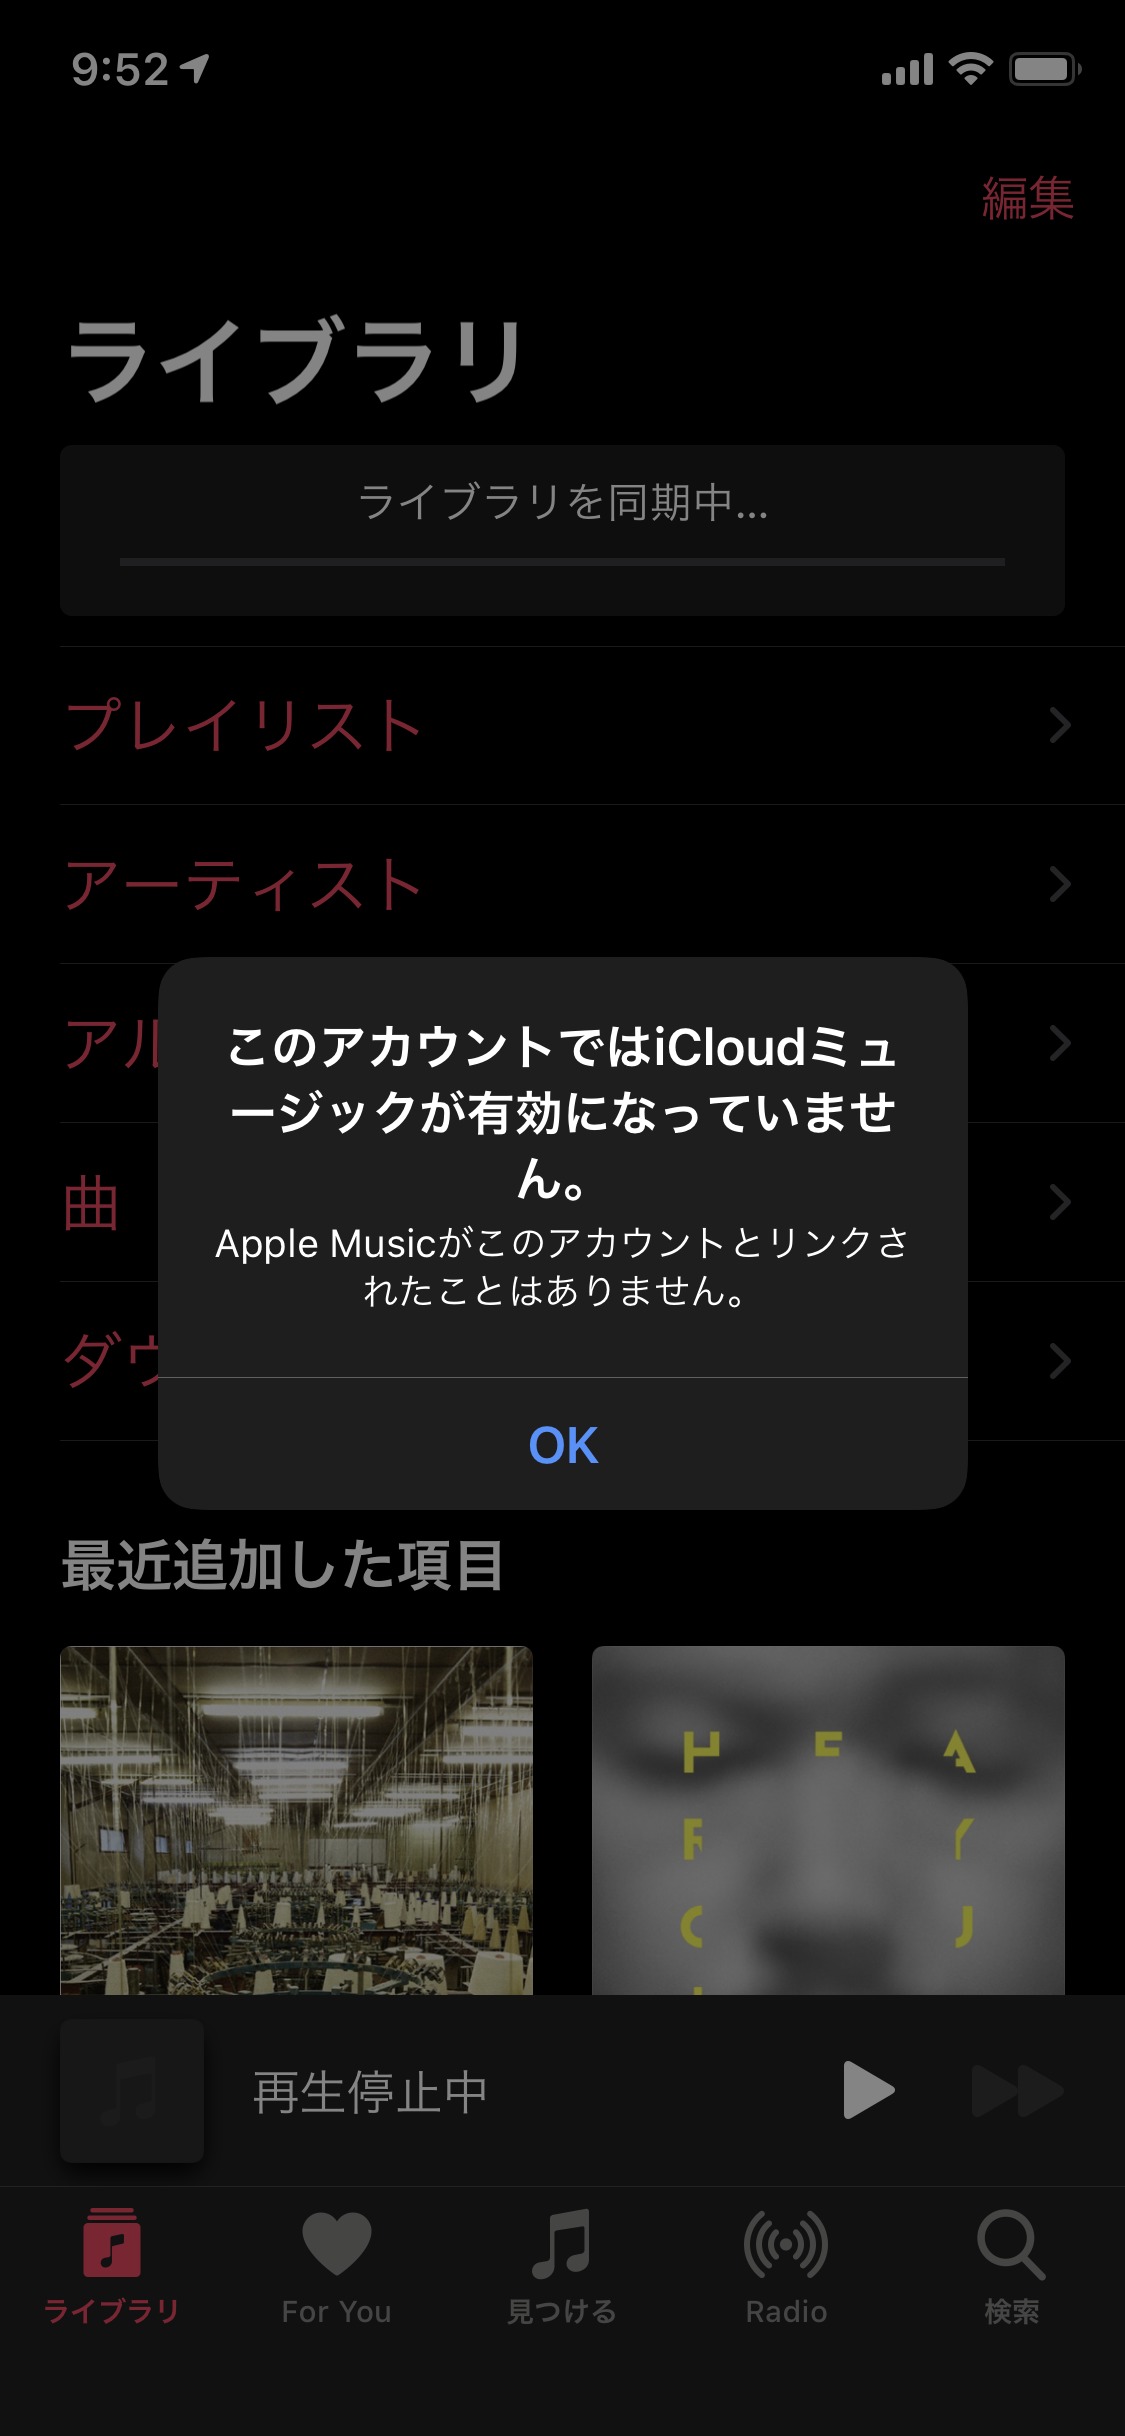 Apple Music　このアカウントではiCloudミュージックが有効になっていません。